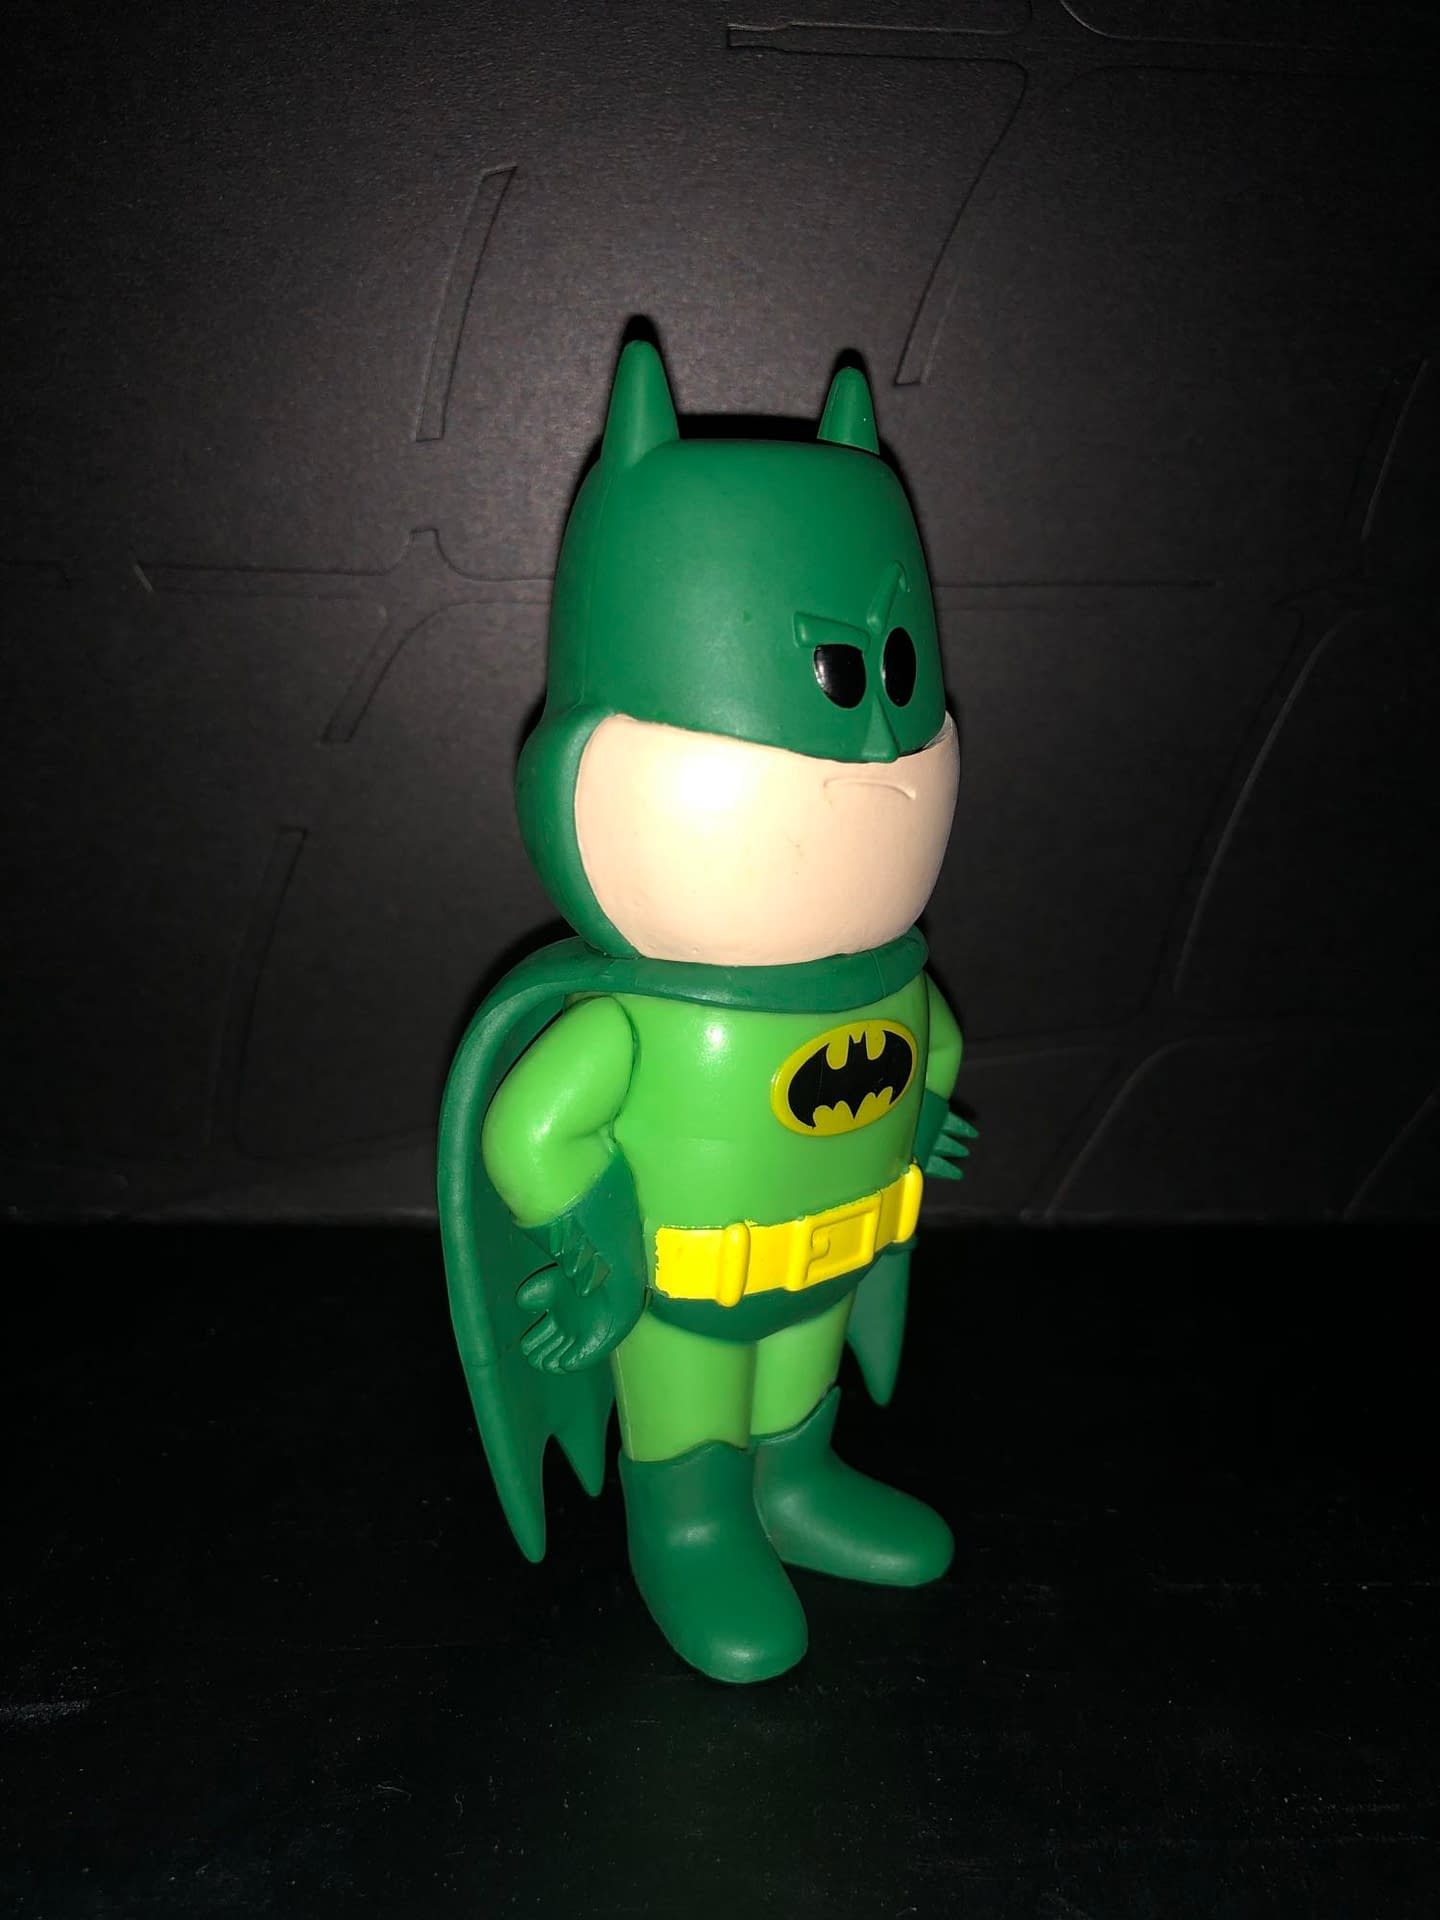 Funko Soda Vinyl Figure Emerald City Comic Con Exclusive Green Batman Figure, side view of figure.